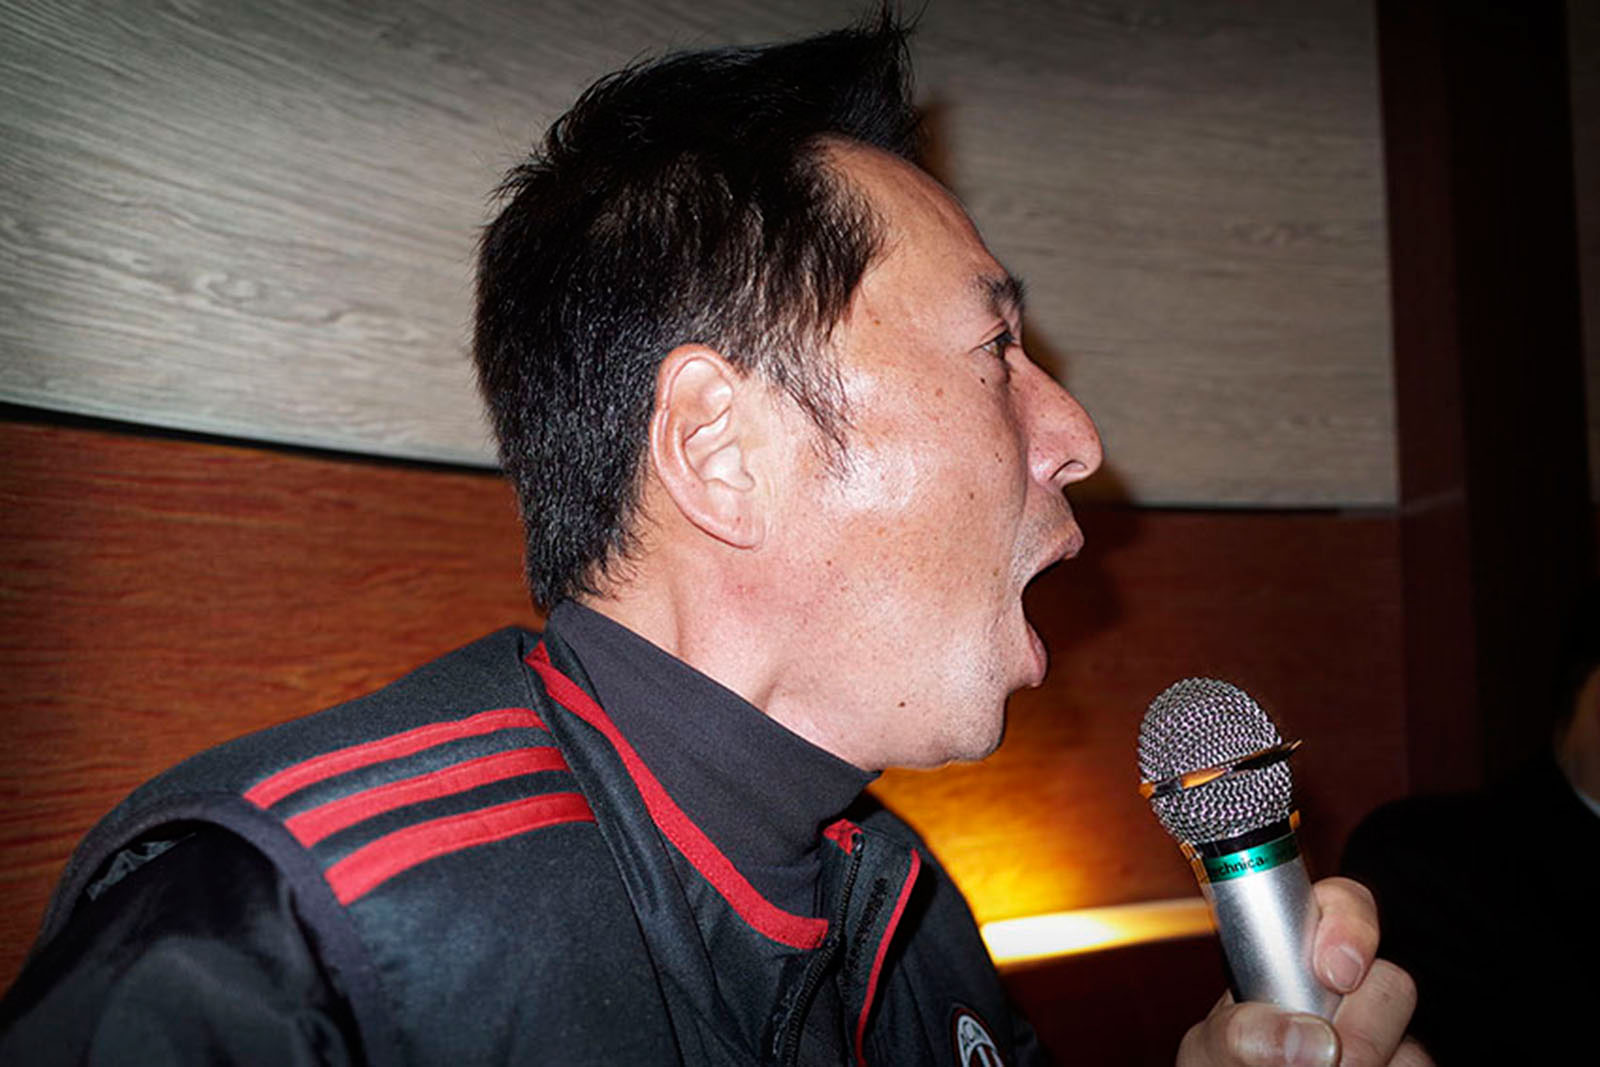   A man singing karaoke Sasebo, Japan 2015        